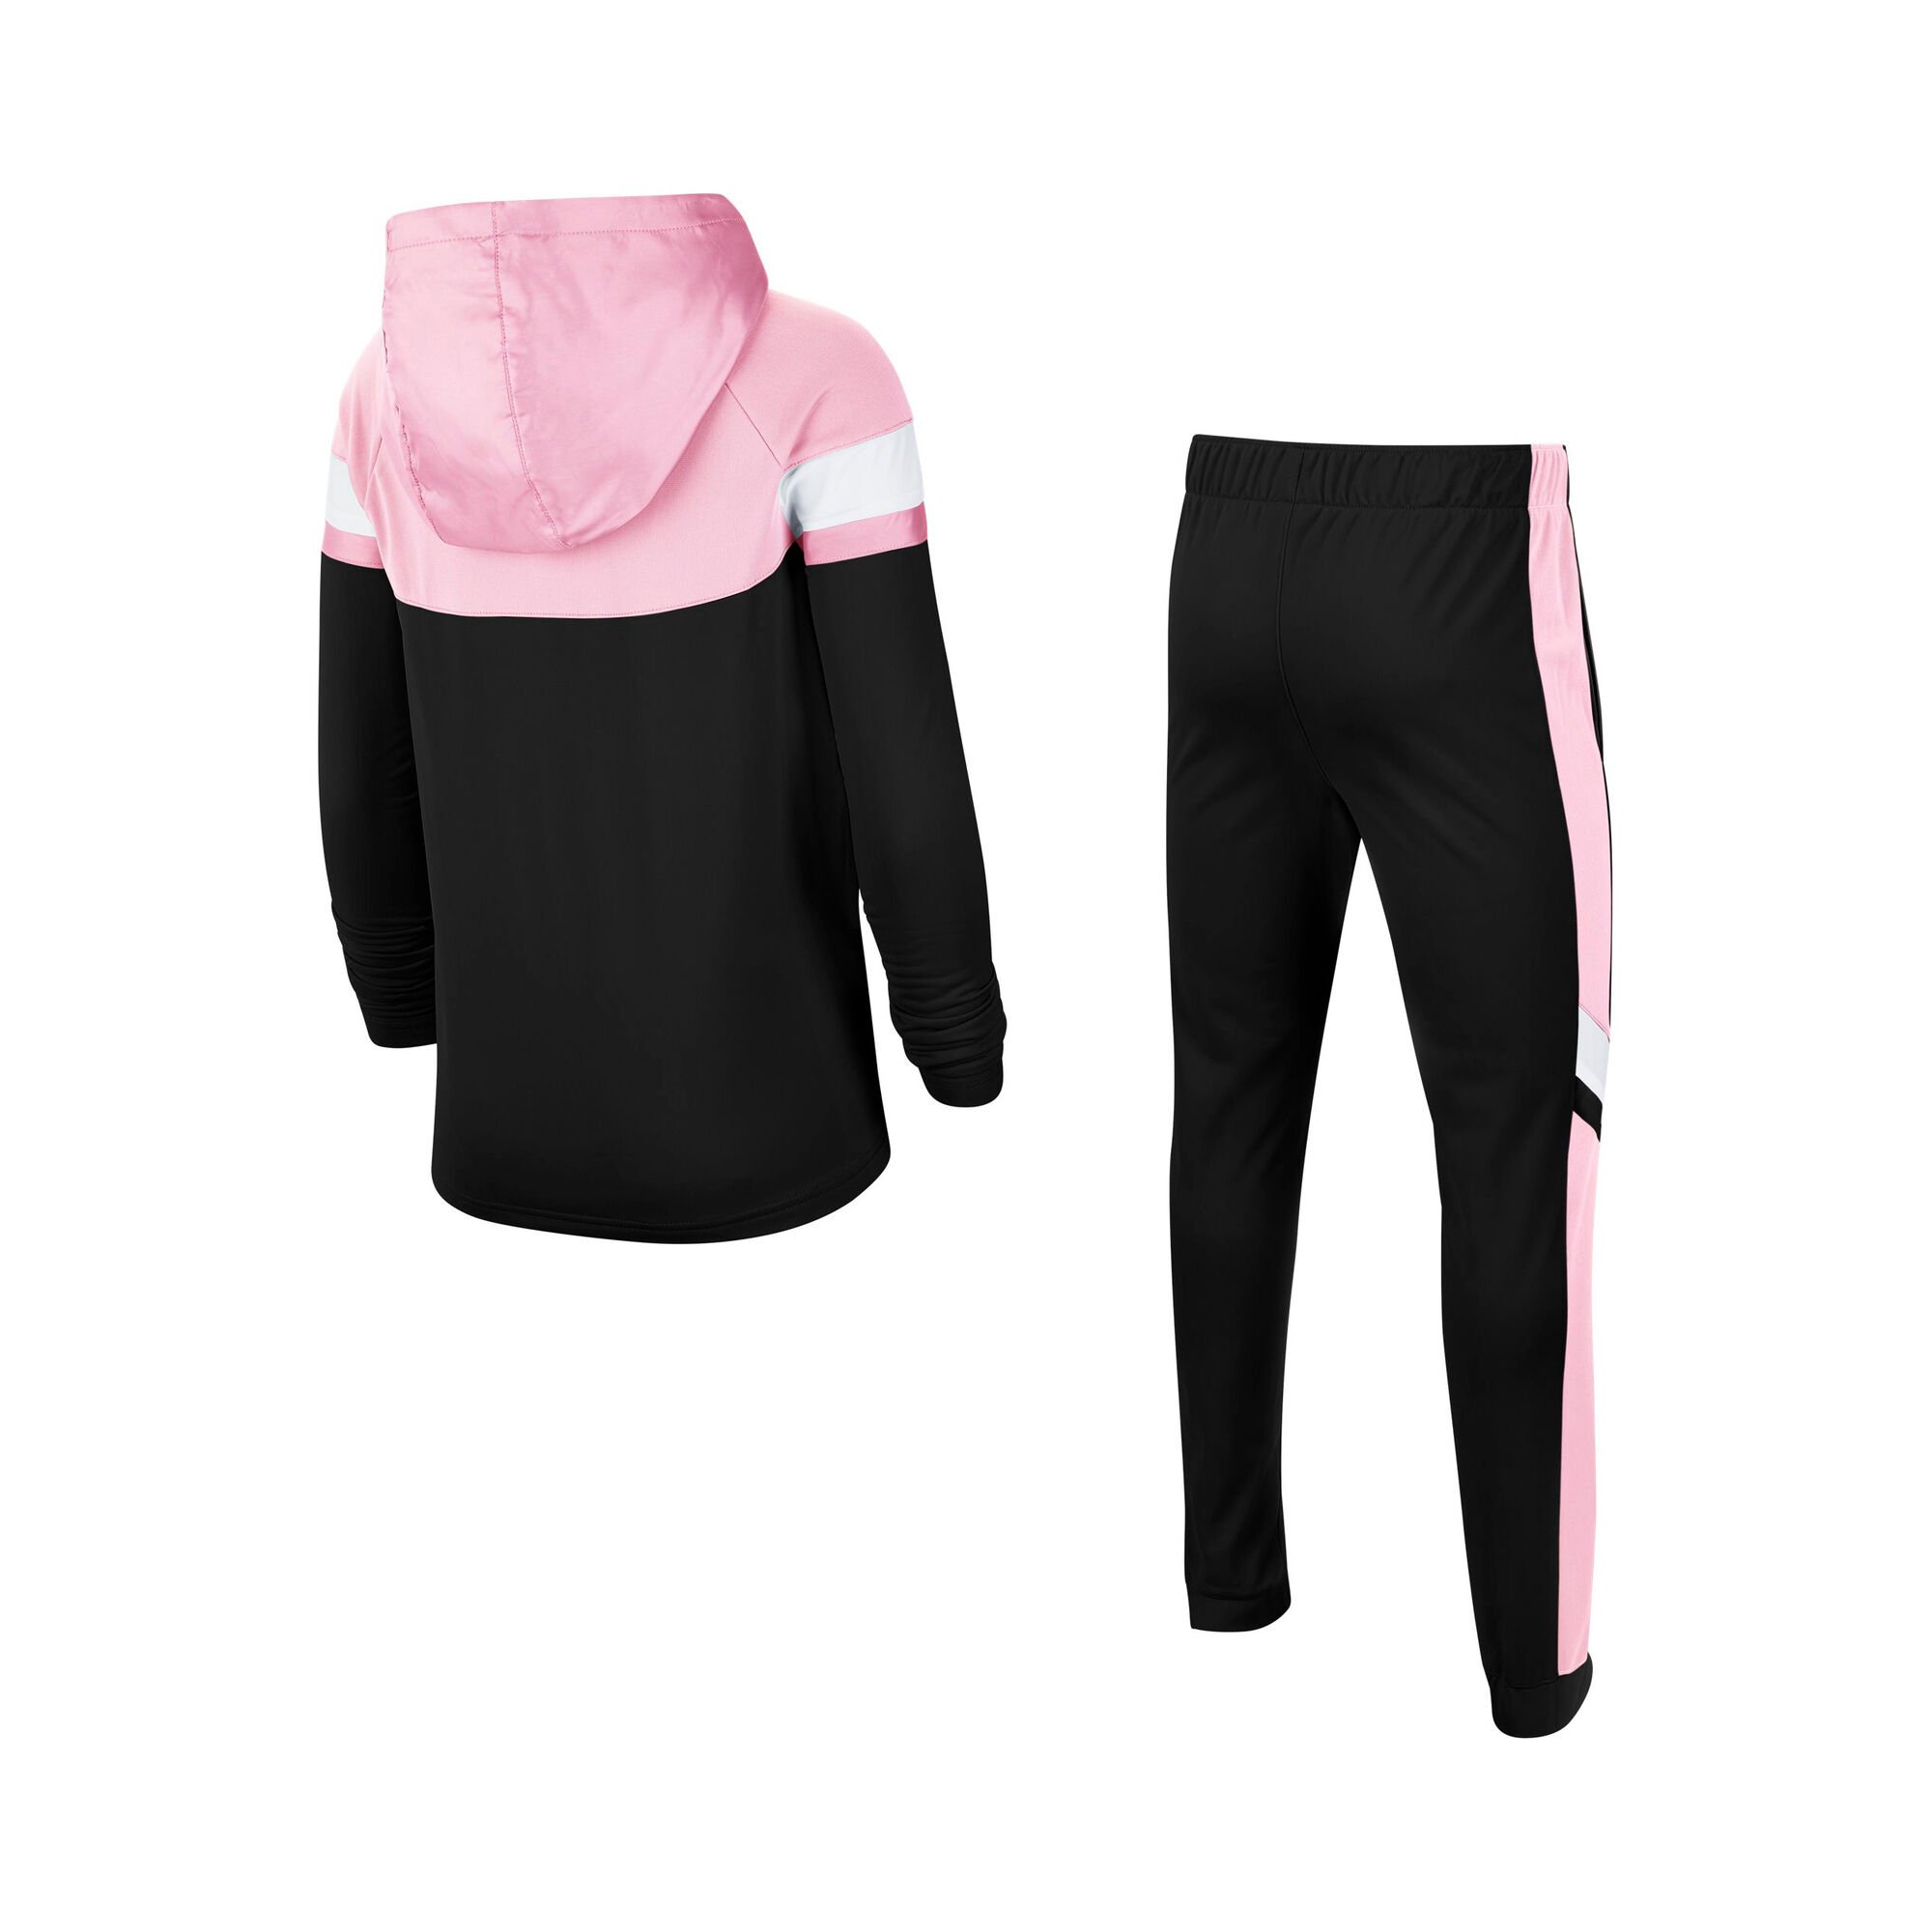 puberteit Bad Afstoting Nike Sportswear Trainingspak Meisjes - Zwart, Roze online kopen |  Tennis-Point